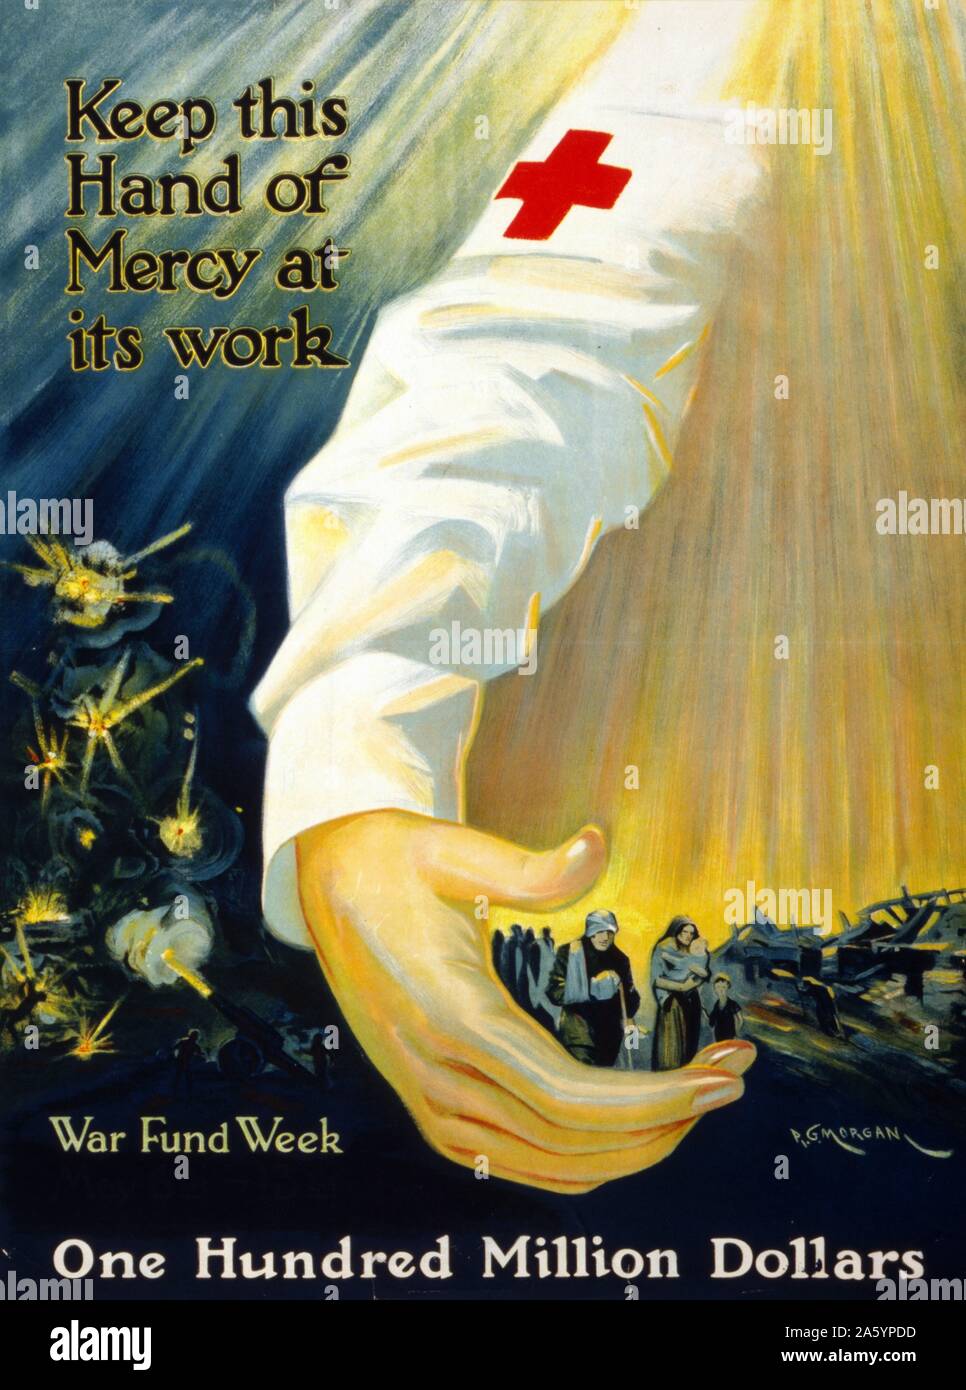 La Seconde Guerre mondiale, une croix rouge affiche de campagne promouvant la guerre spéciale. Datée 1918 Banque D'Images